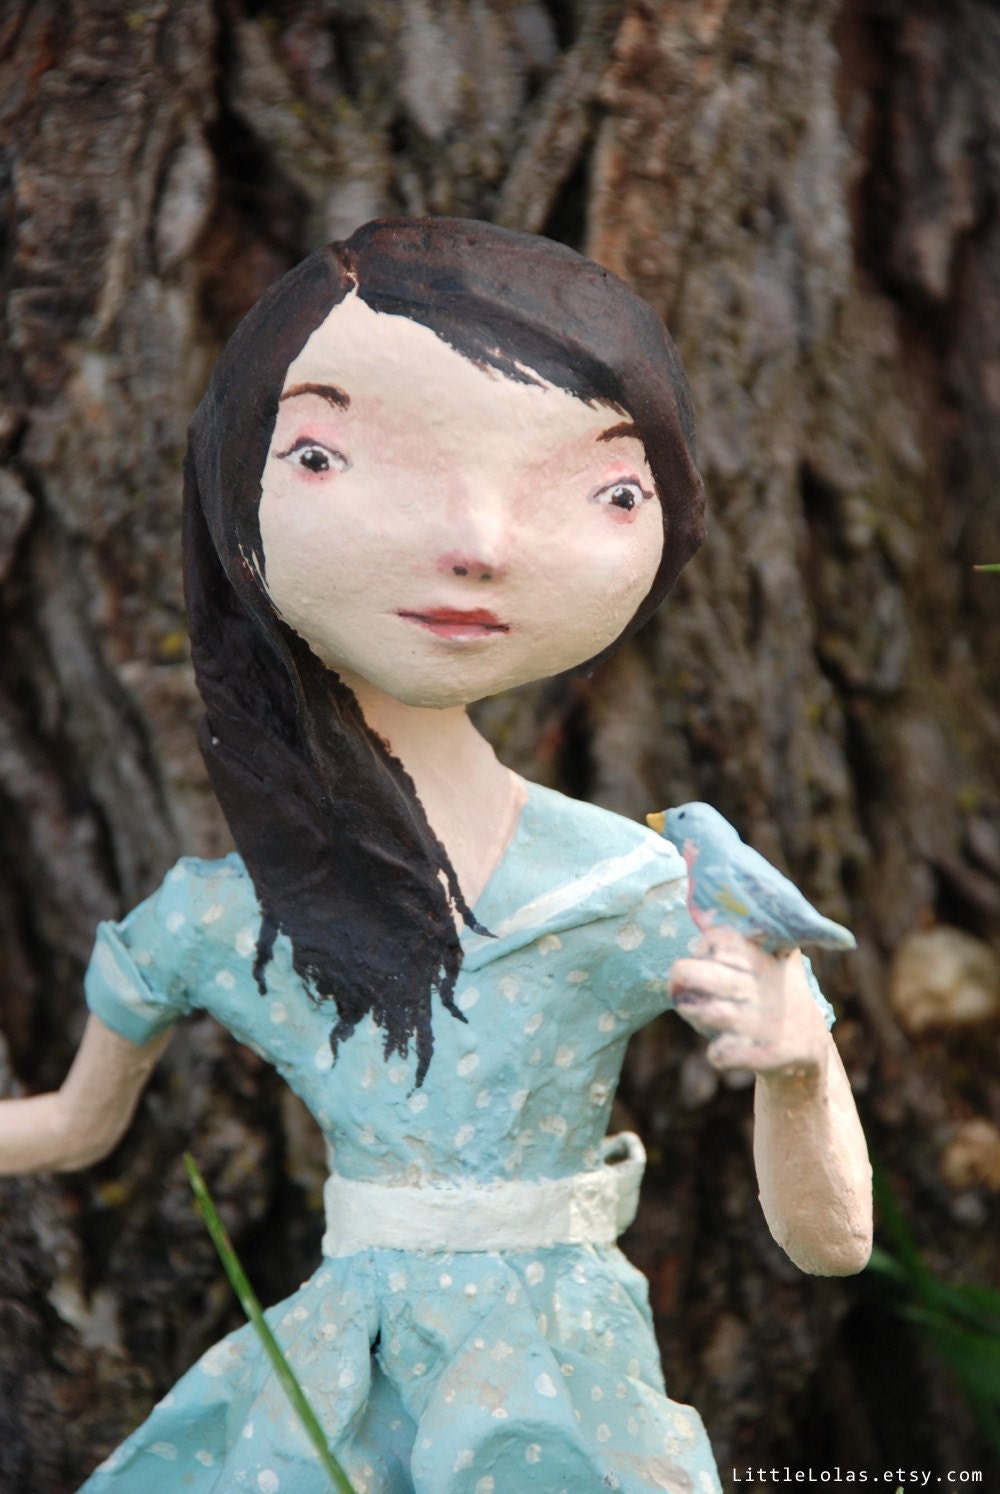 My Pet 
Bluebird paper mache doll